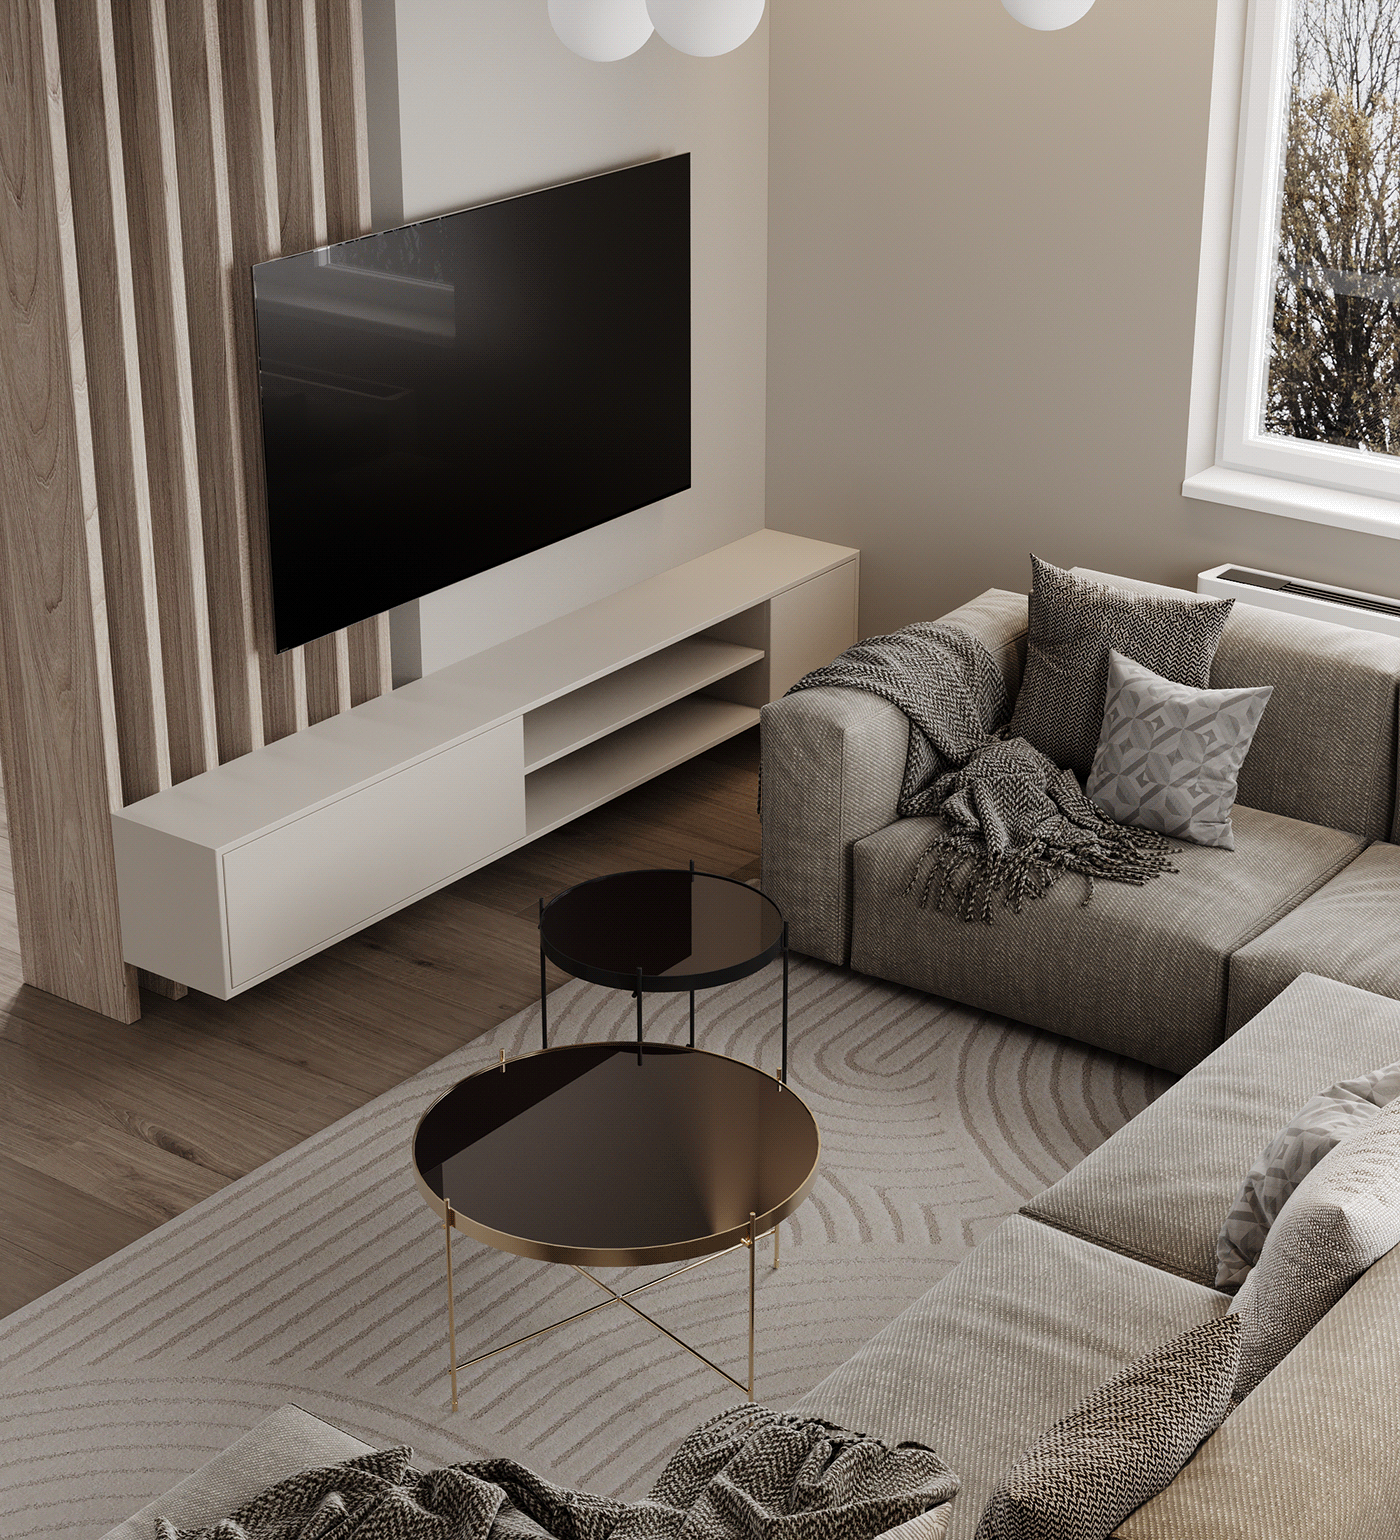 house interior design  modern visualization furniture design  wood Interior LUXURYHOUSE warminterior warmminimalism